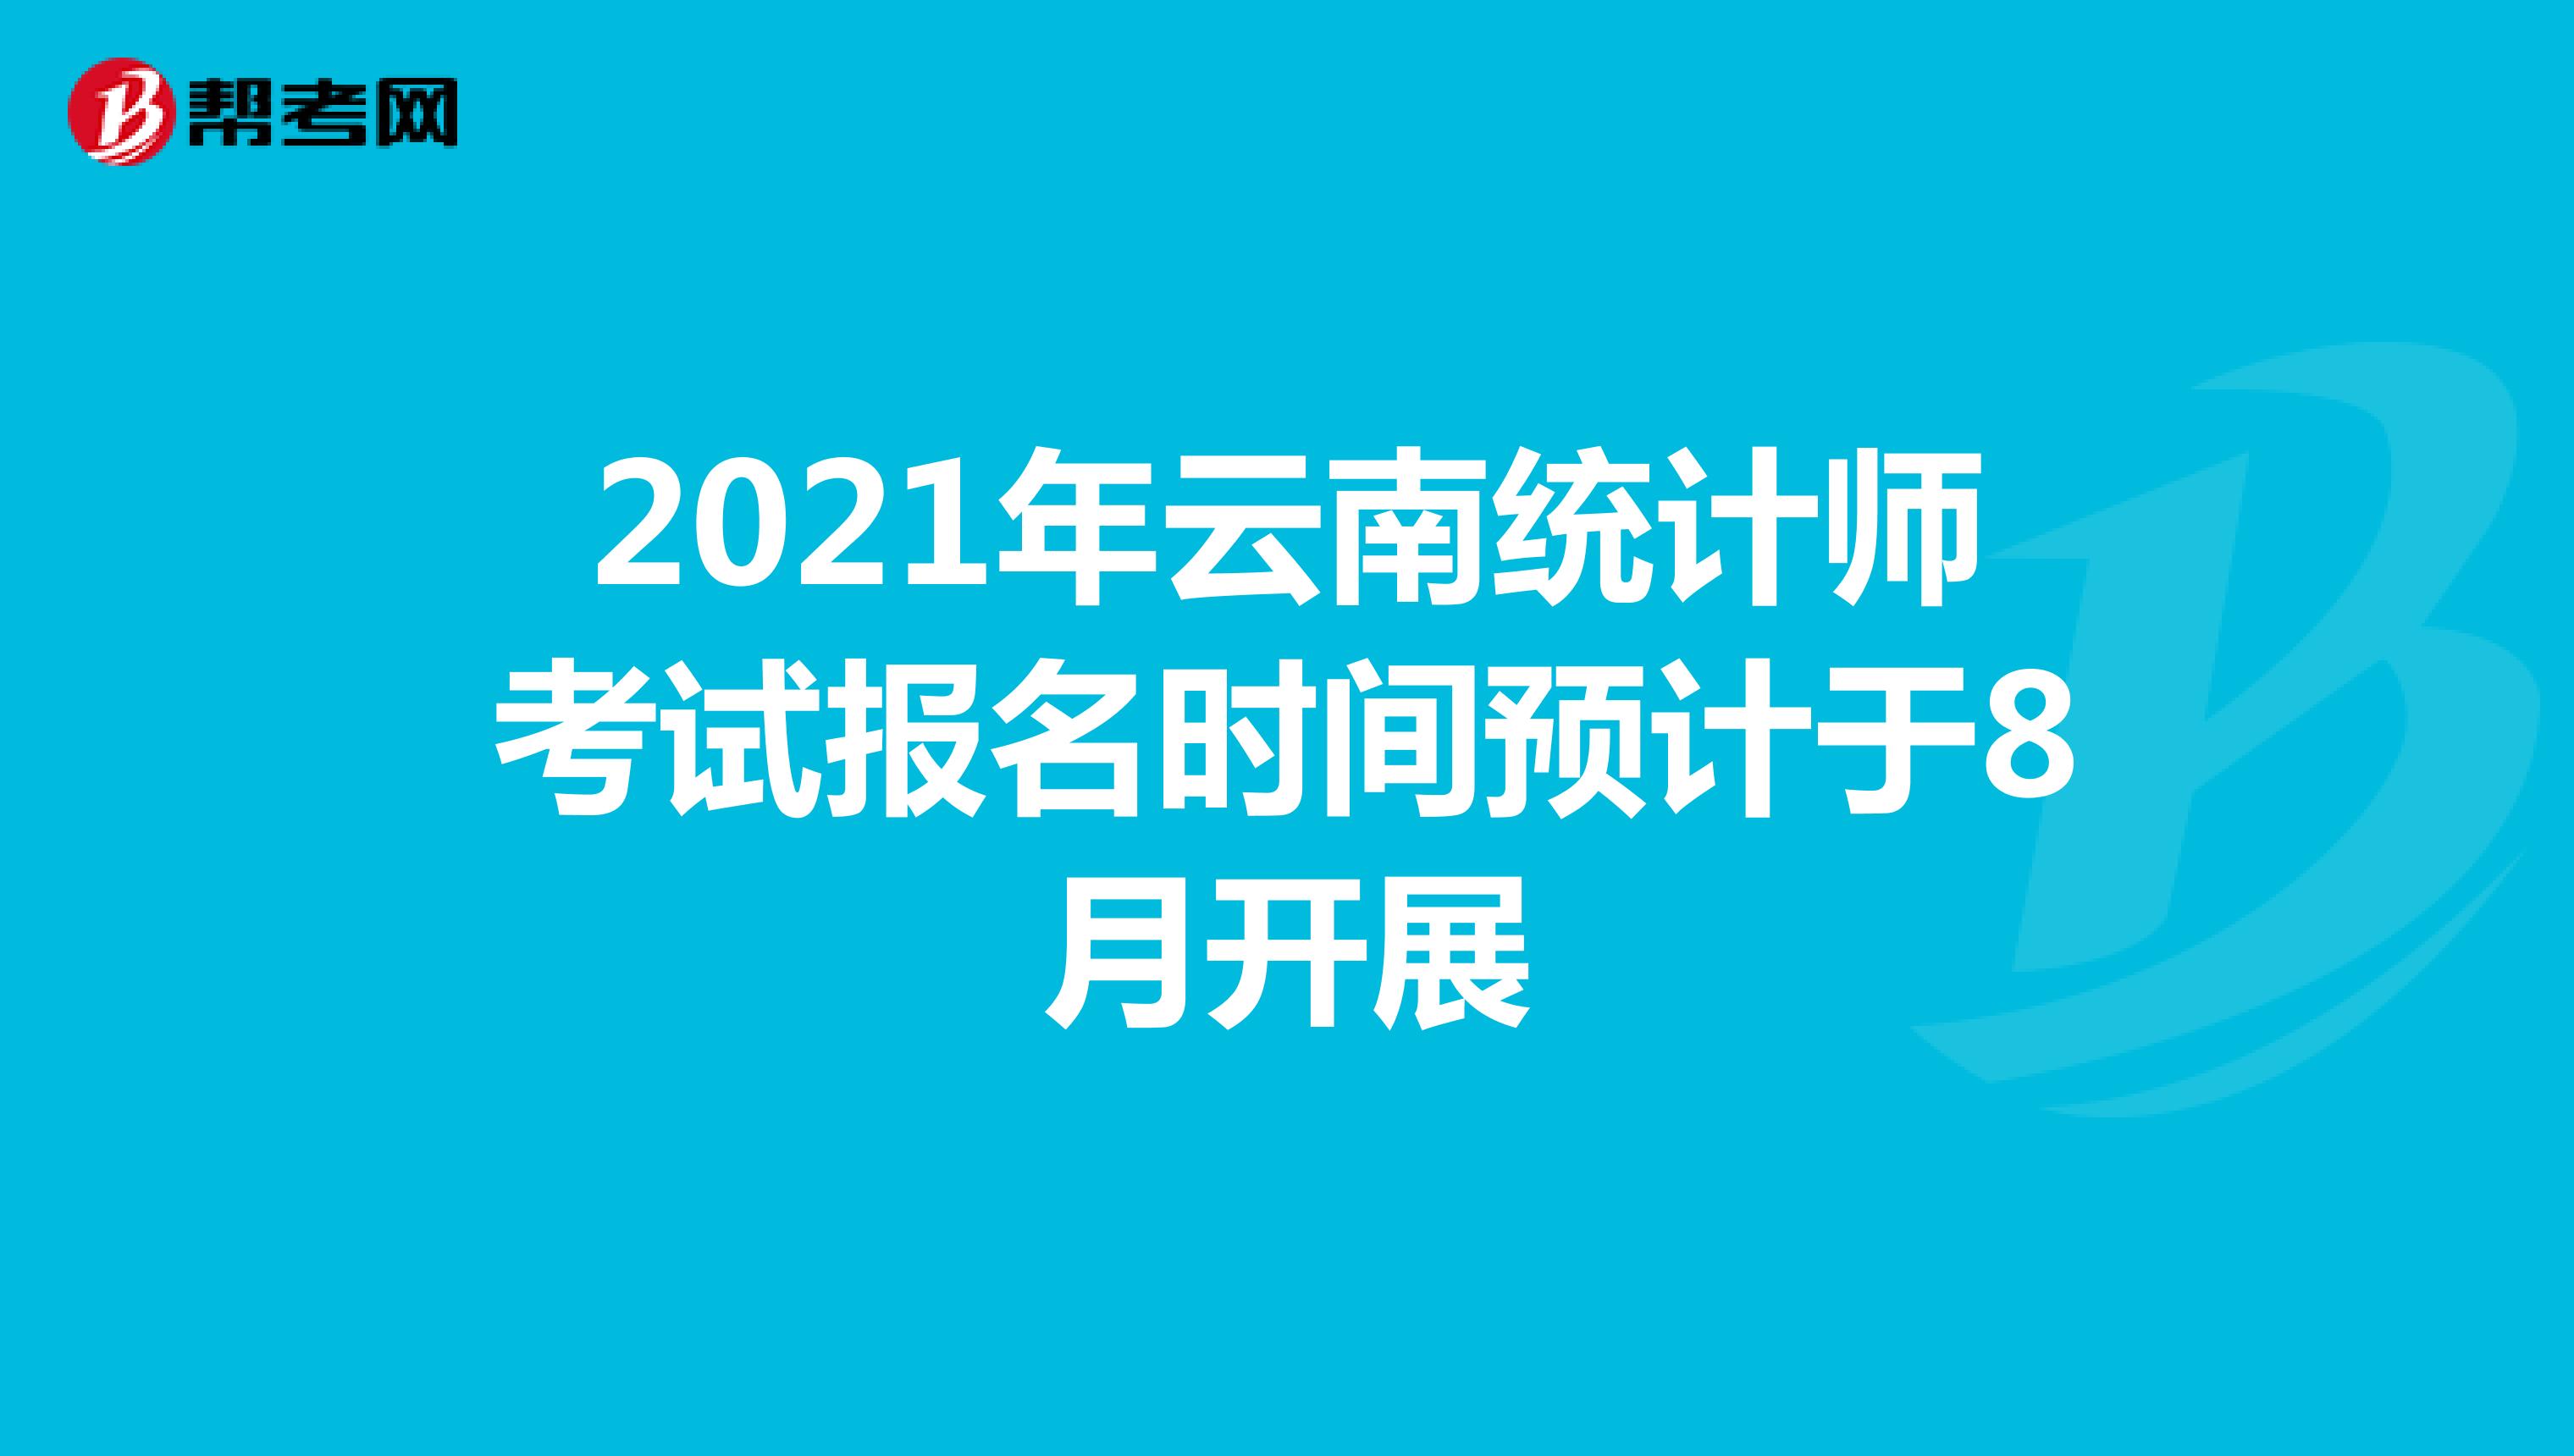 2021年云南统计师考试报名时间预计于8月开展